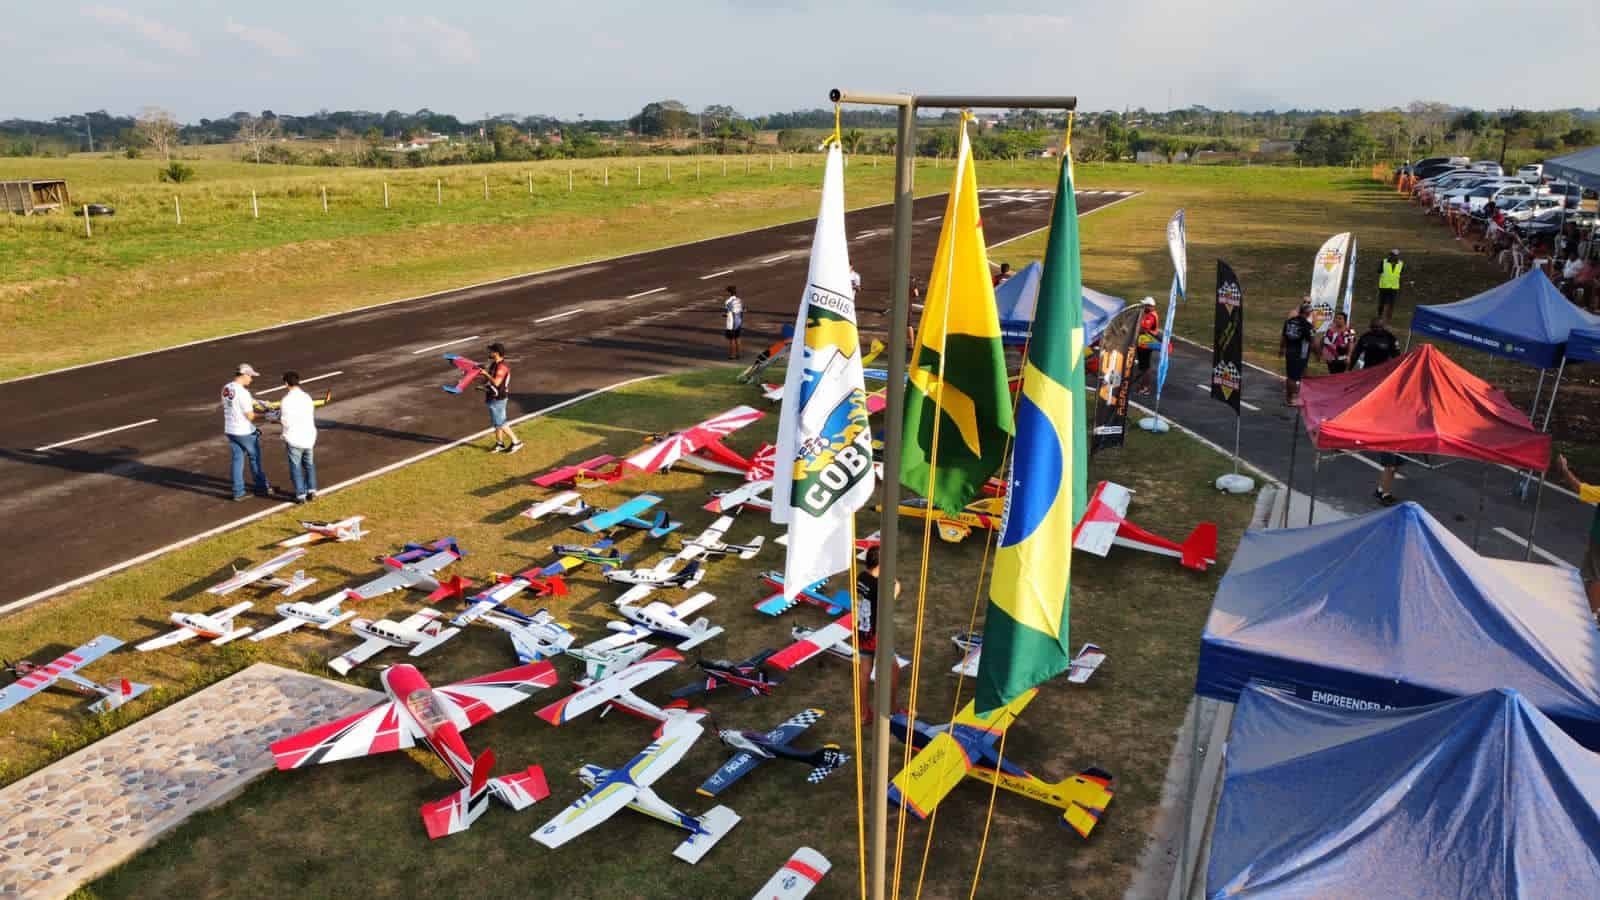 Aeromodelismo ganha adeptos e vira sensação em Rio Branco (AC)